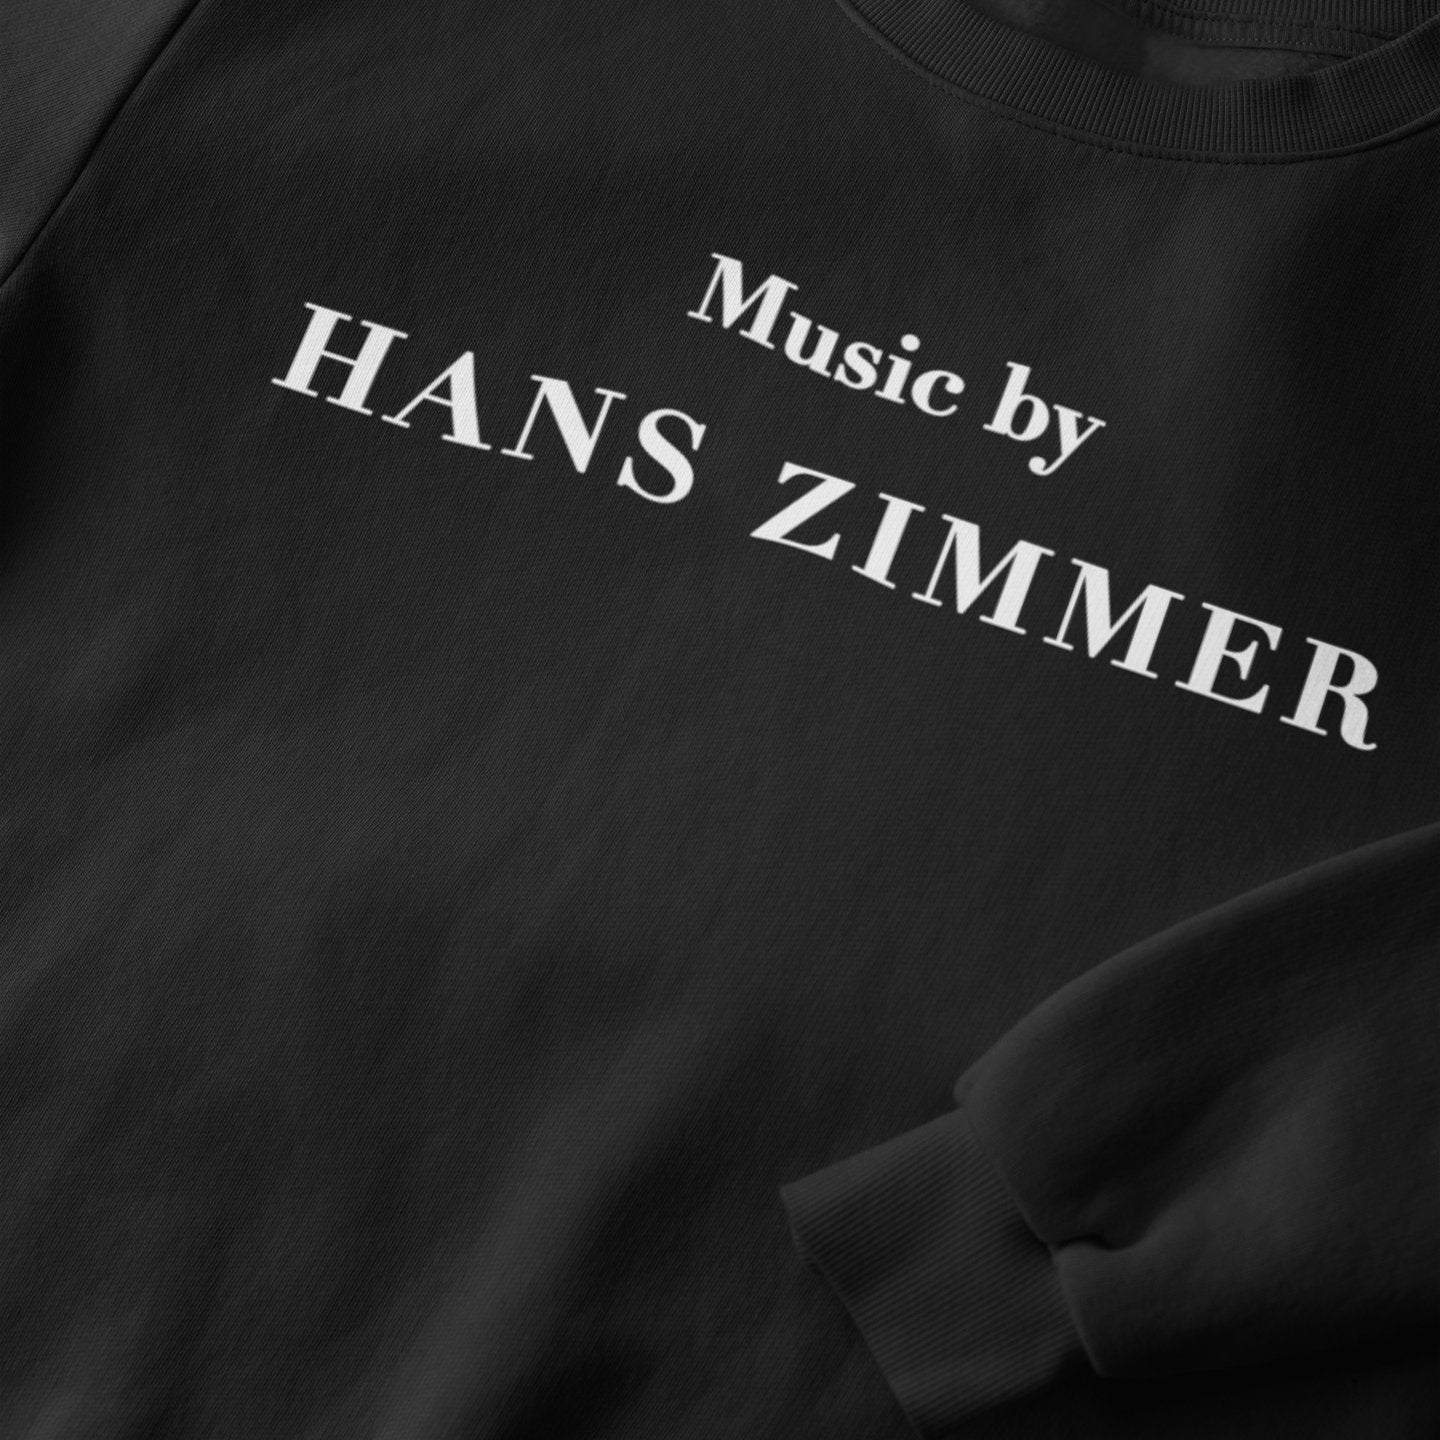 Hans Zimmer - Sweatshirt